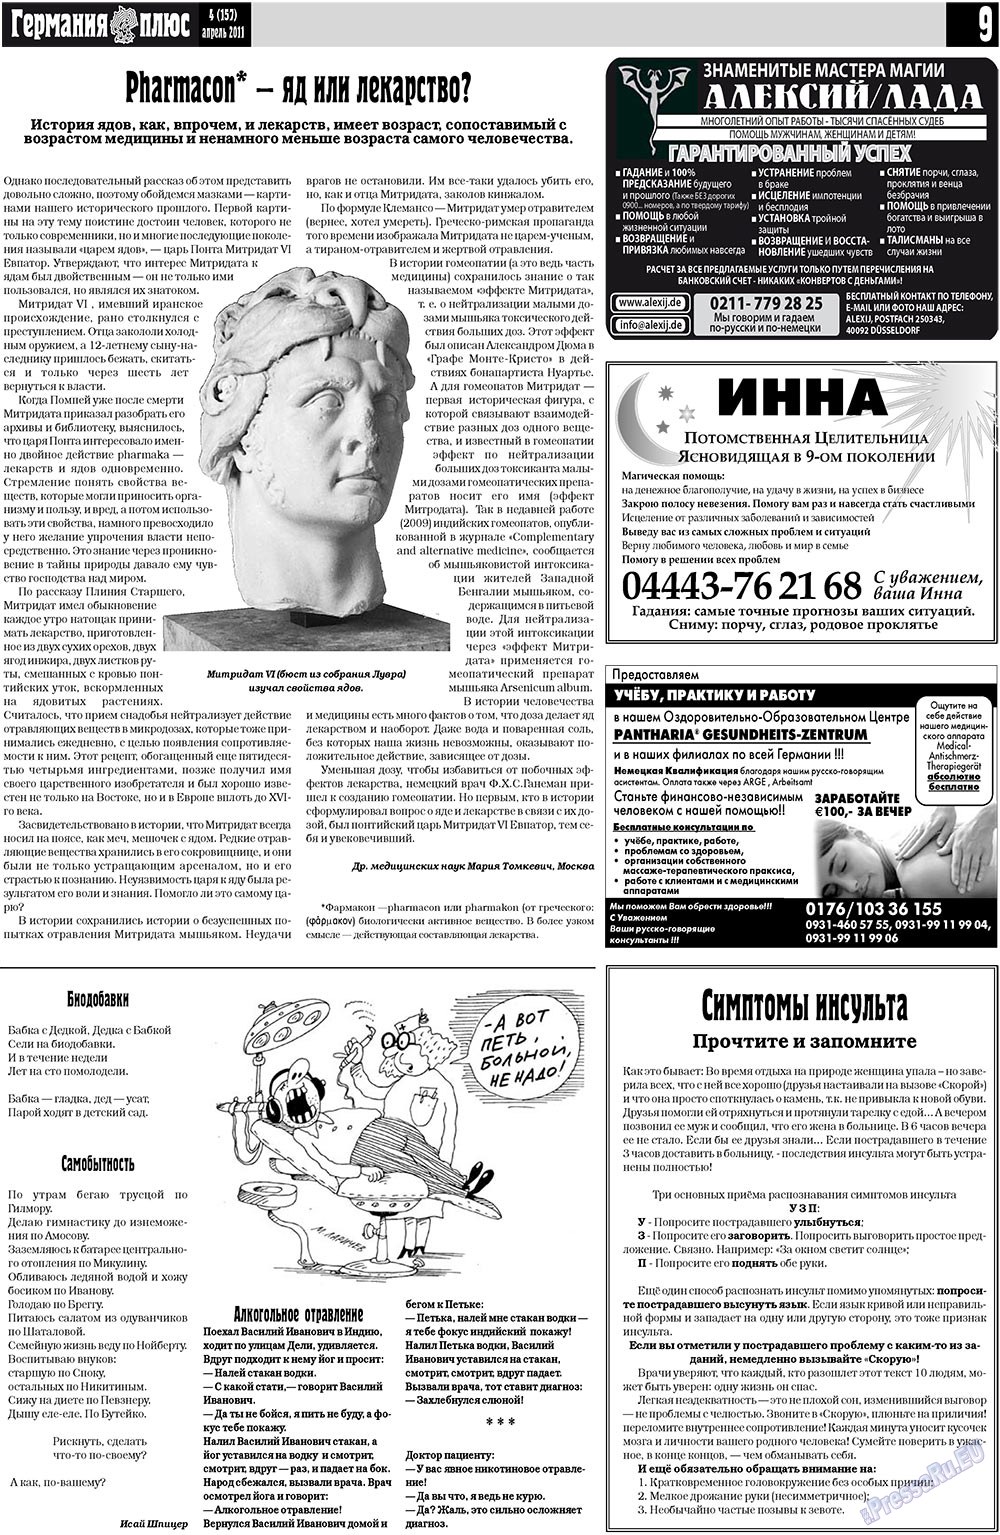 Германия плюс (газета). 2011 год, номер 4, стр. 9